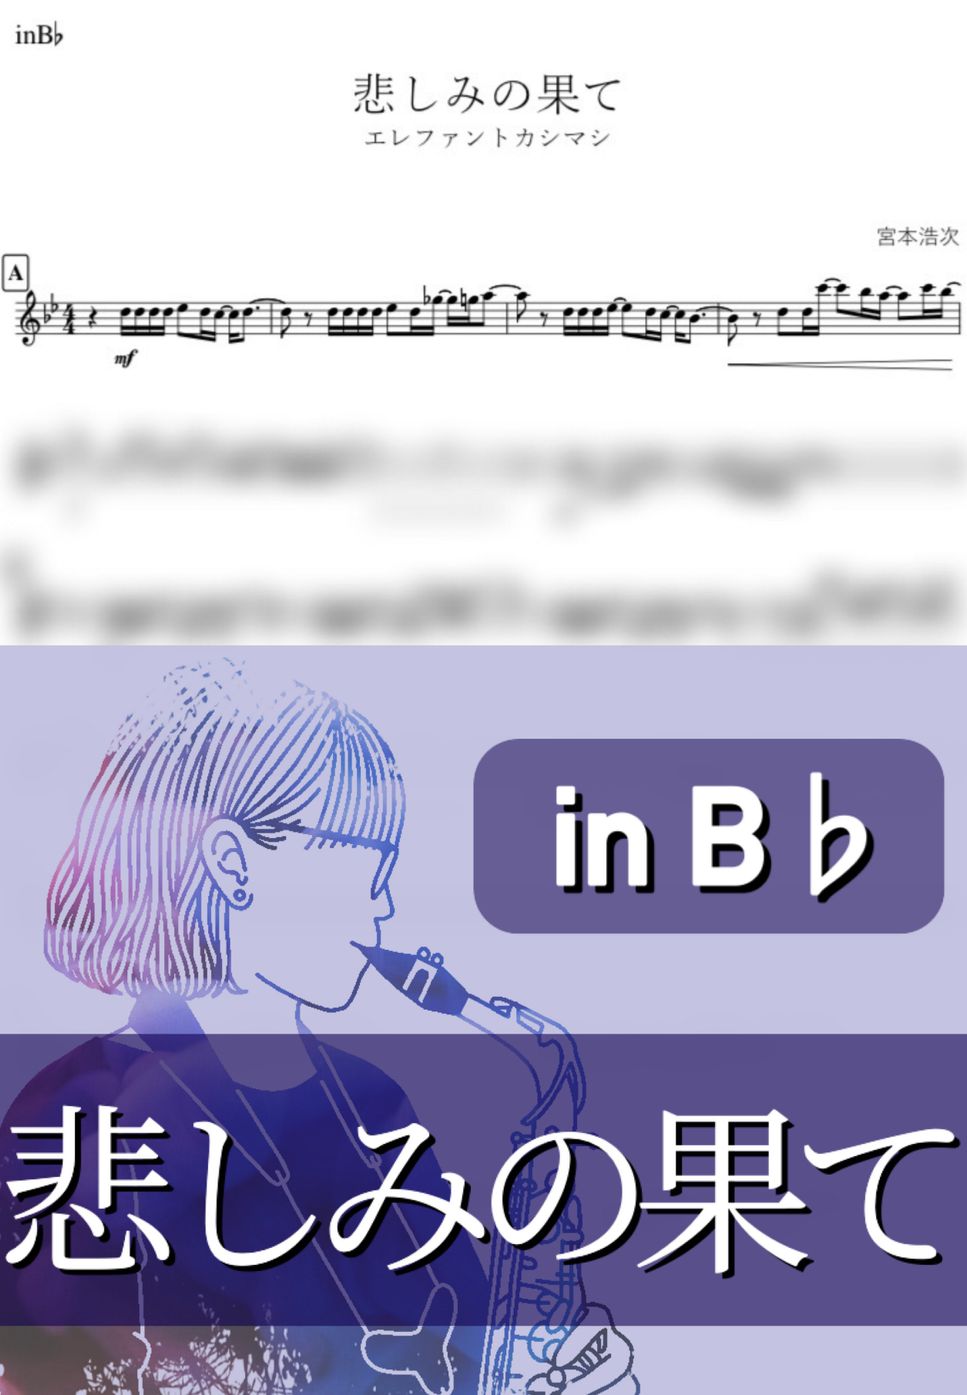 エレファントカシマシ - 悲しみの果て (B♭) by kanamusic